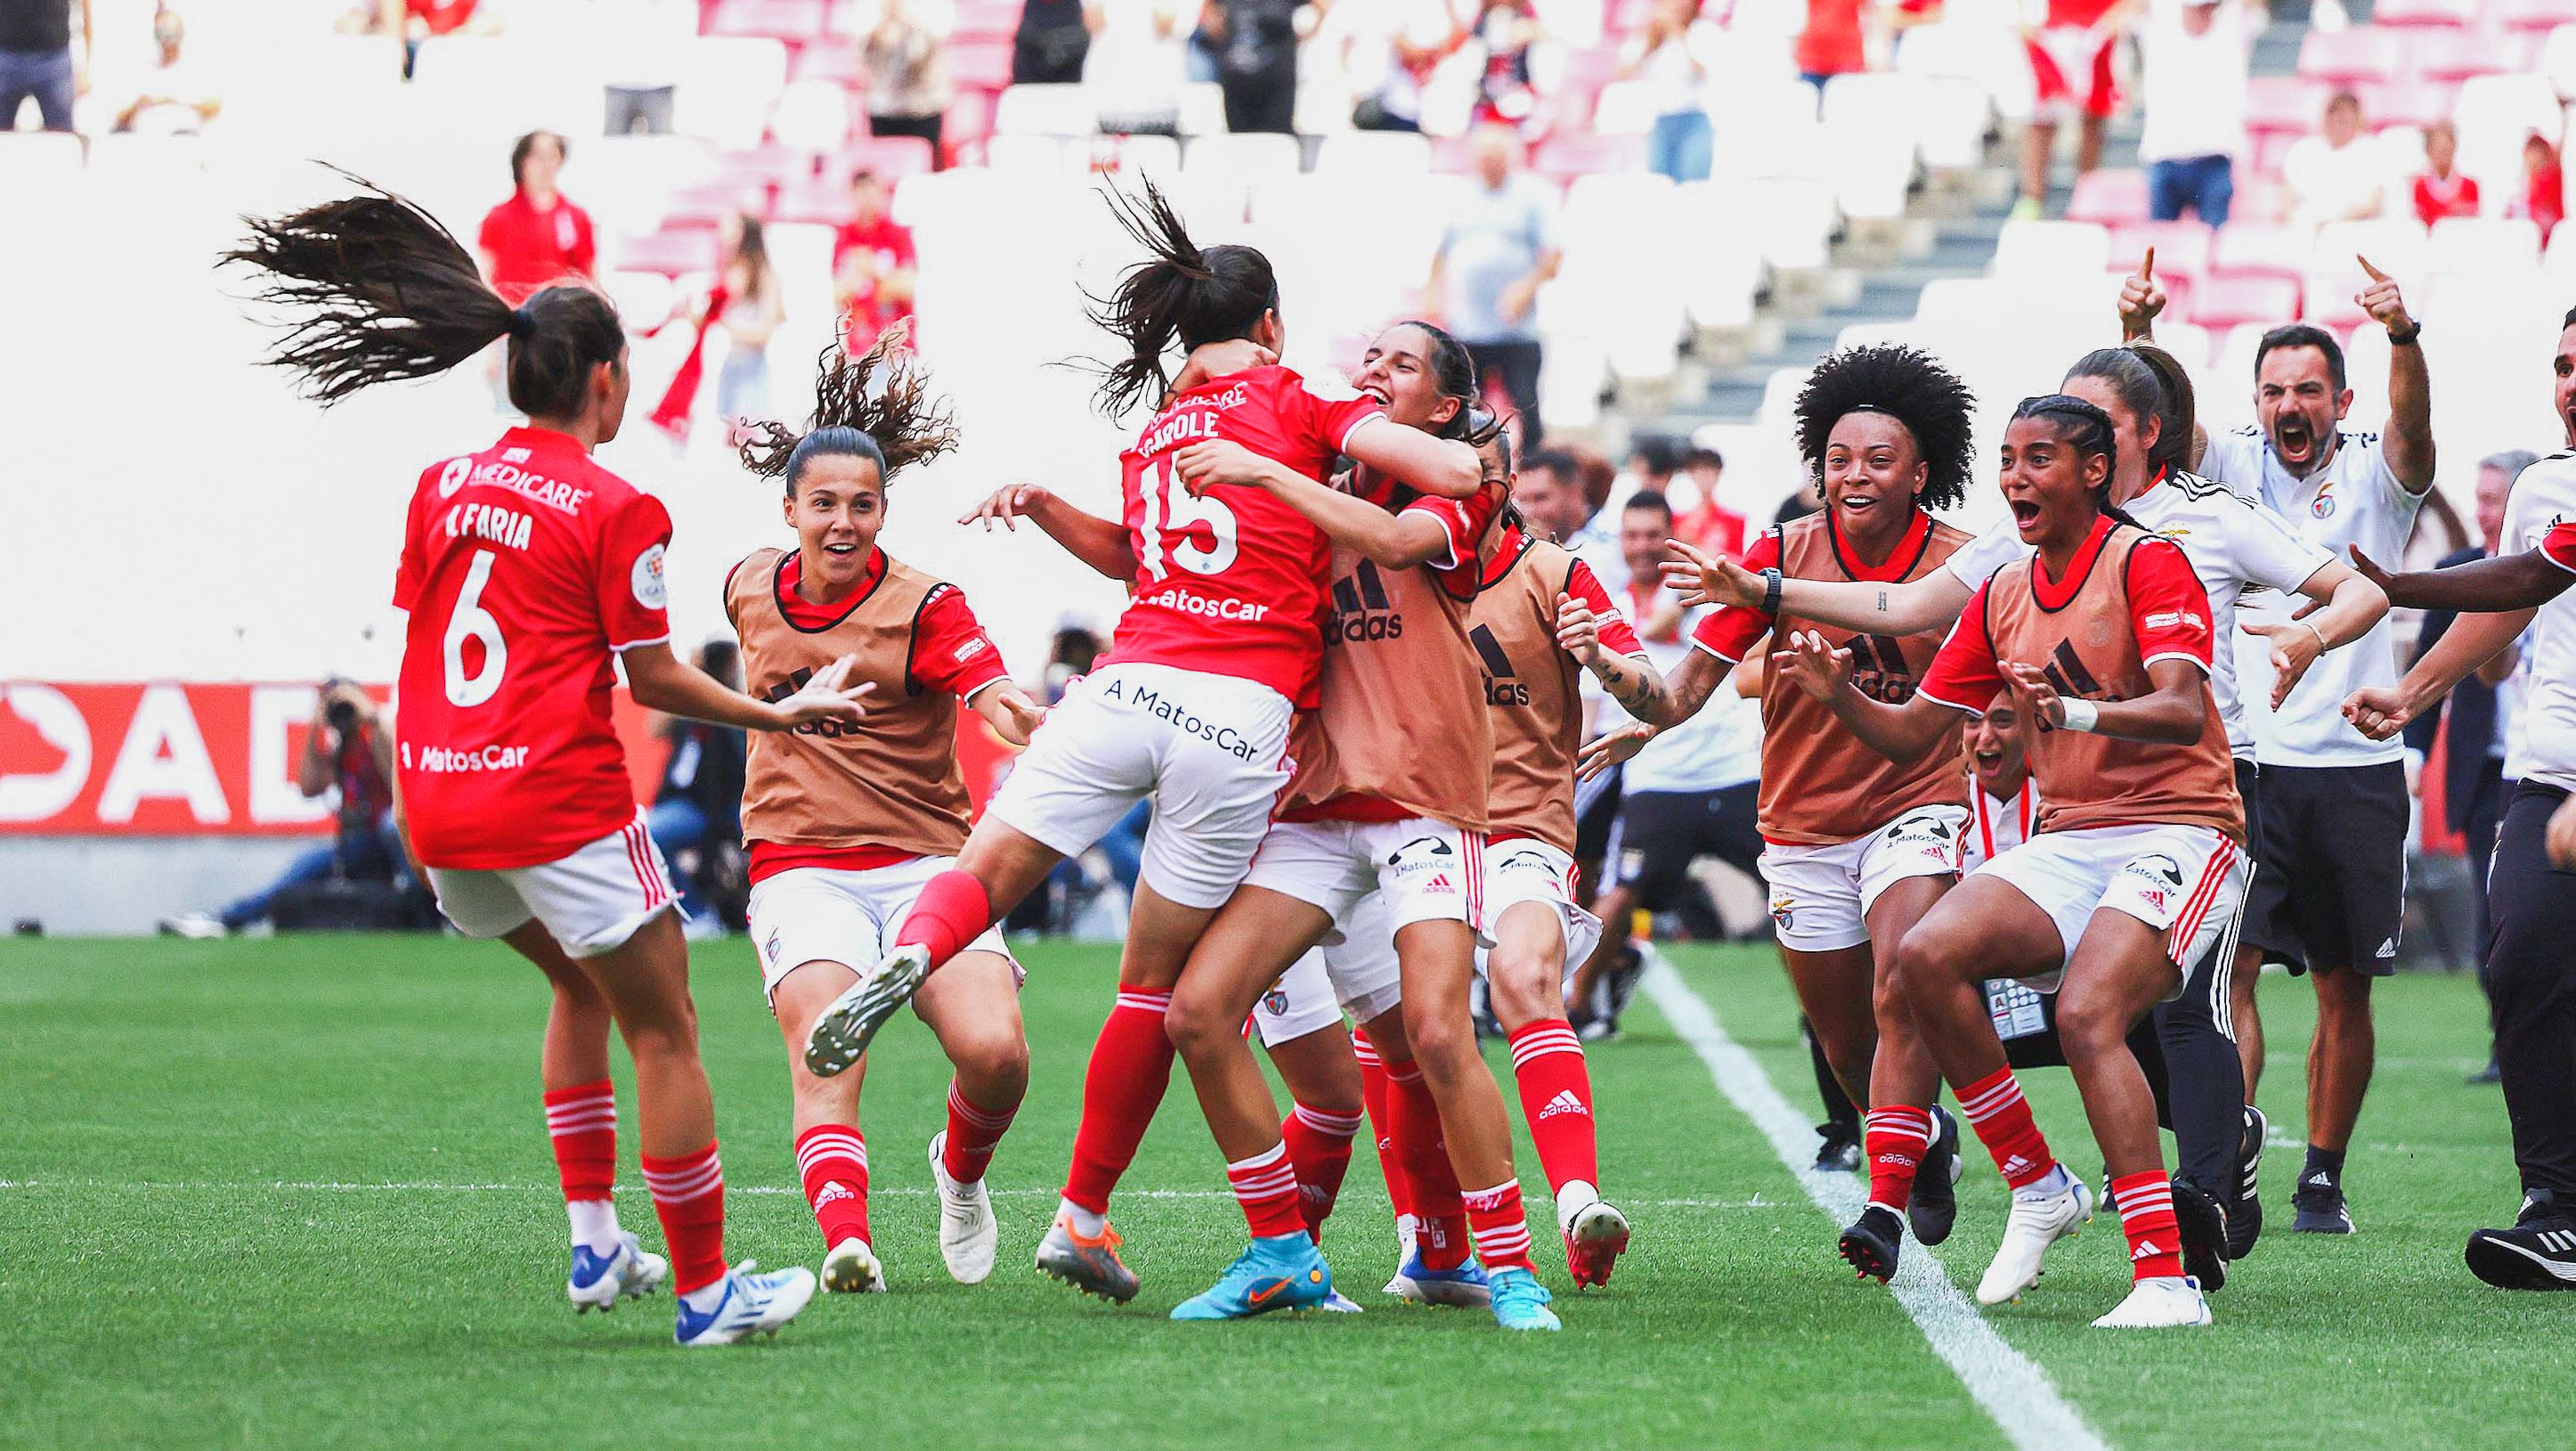 Basquetebol feminino: Benfica perde campeonato em jogo 3 da final